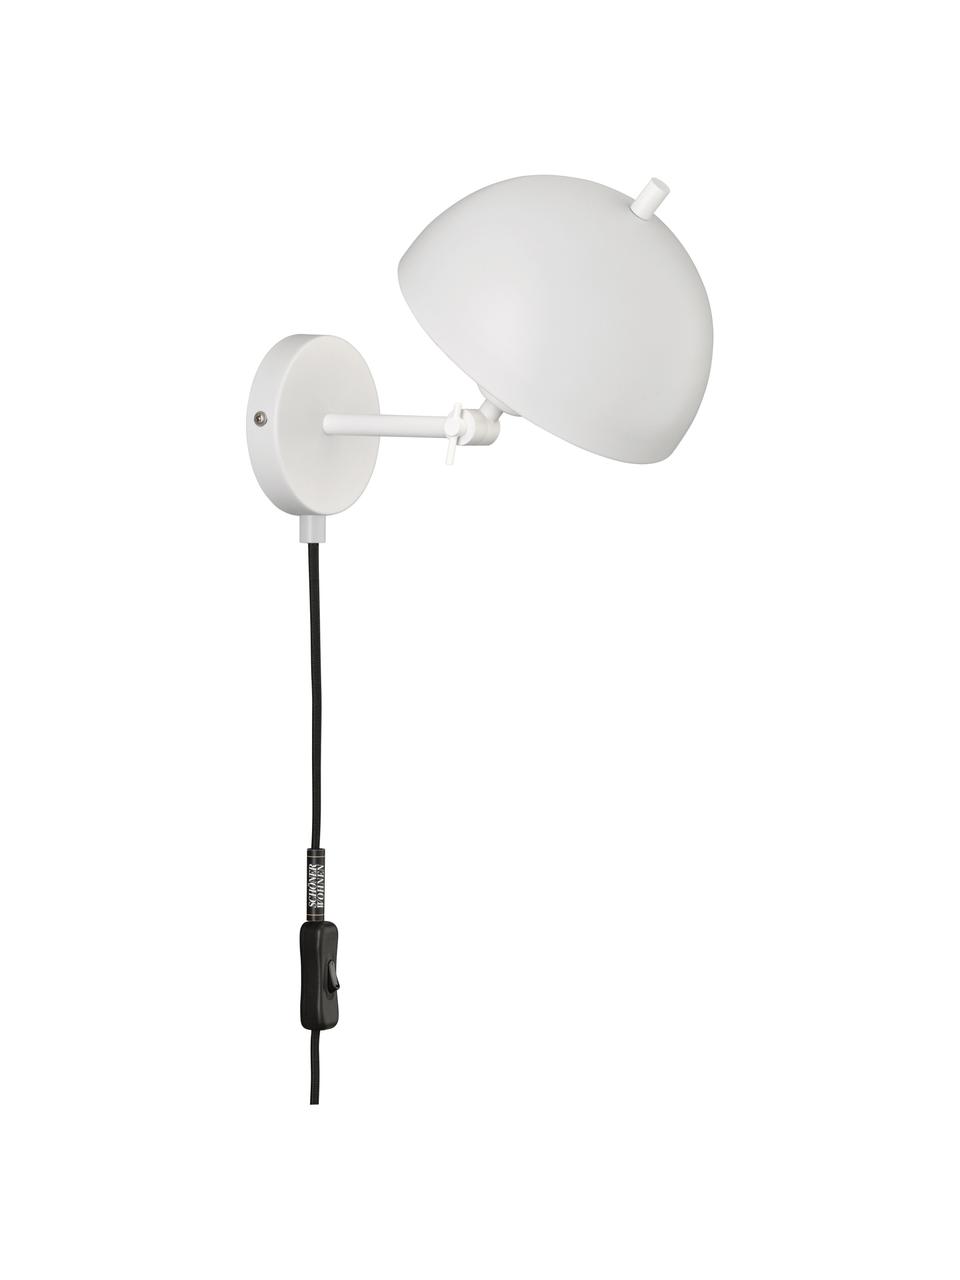 Verstellbare Retro-Wandleuchte Kia mit Stecker, Lampenschirm: Metall, beschichtet, Weiß, 20 x 25 cm